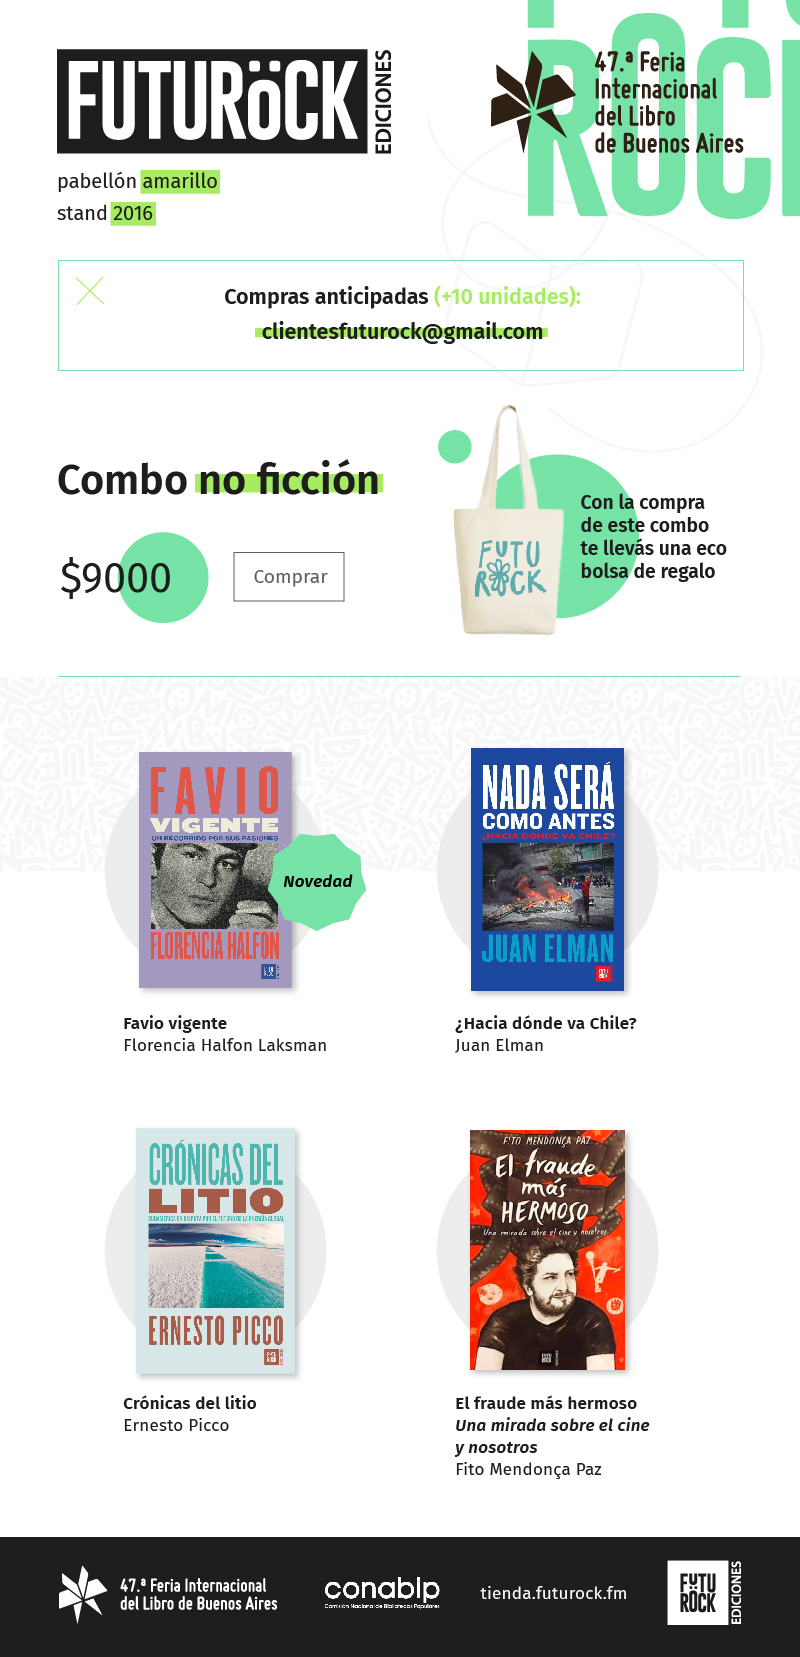 libros de no ficción Flor Halfon, Juan Elman, Ernesto Picco y Fito Mendonca Paz